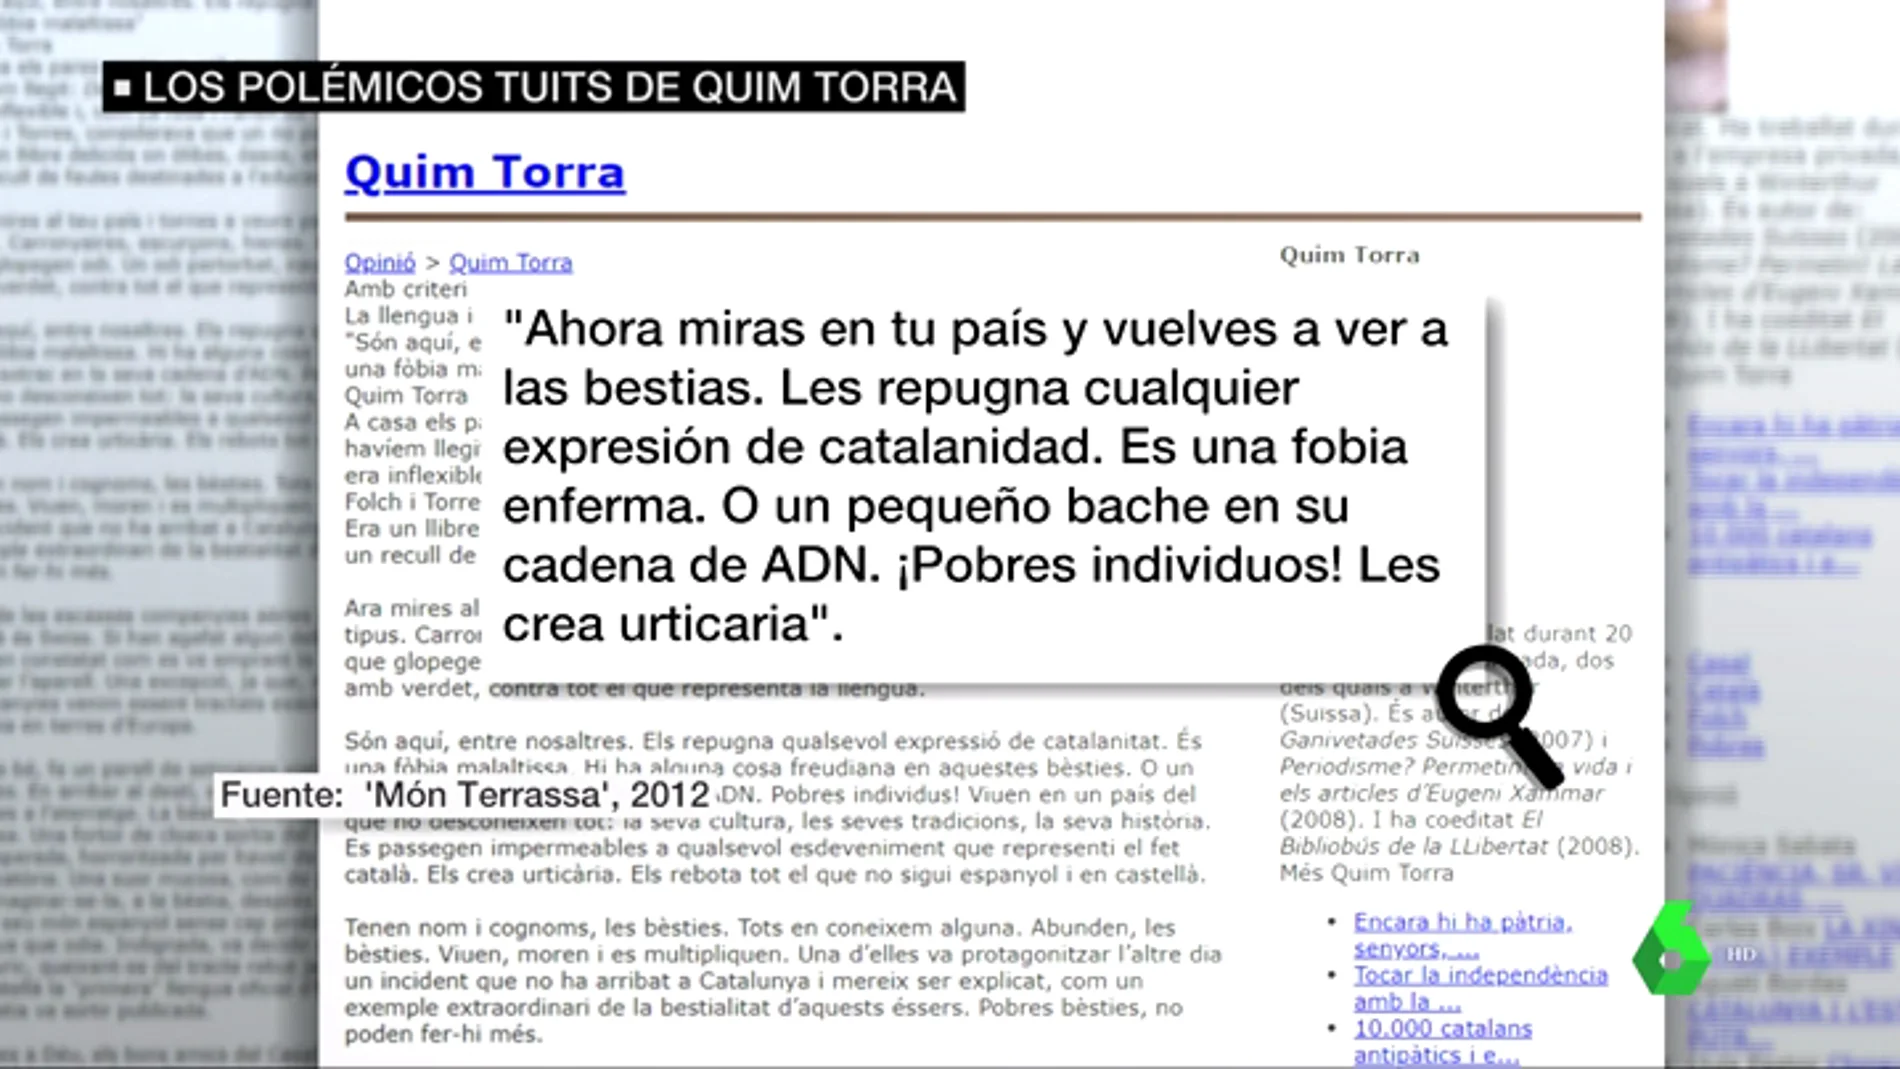 Ataques a España, Andalucía, el castellano... estos son los polémicos artículos de opinión del president Quim Torra: 